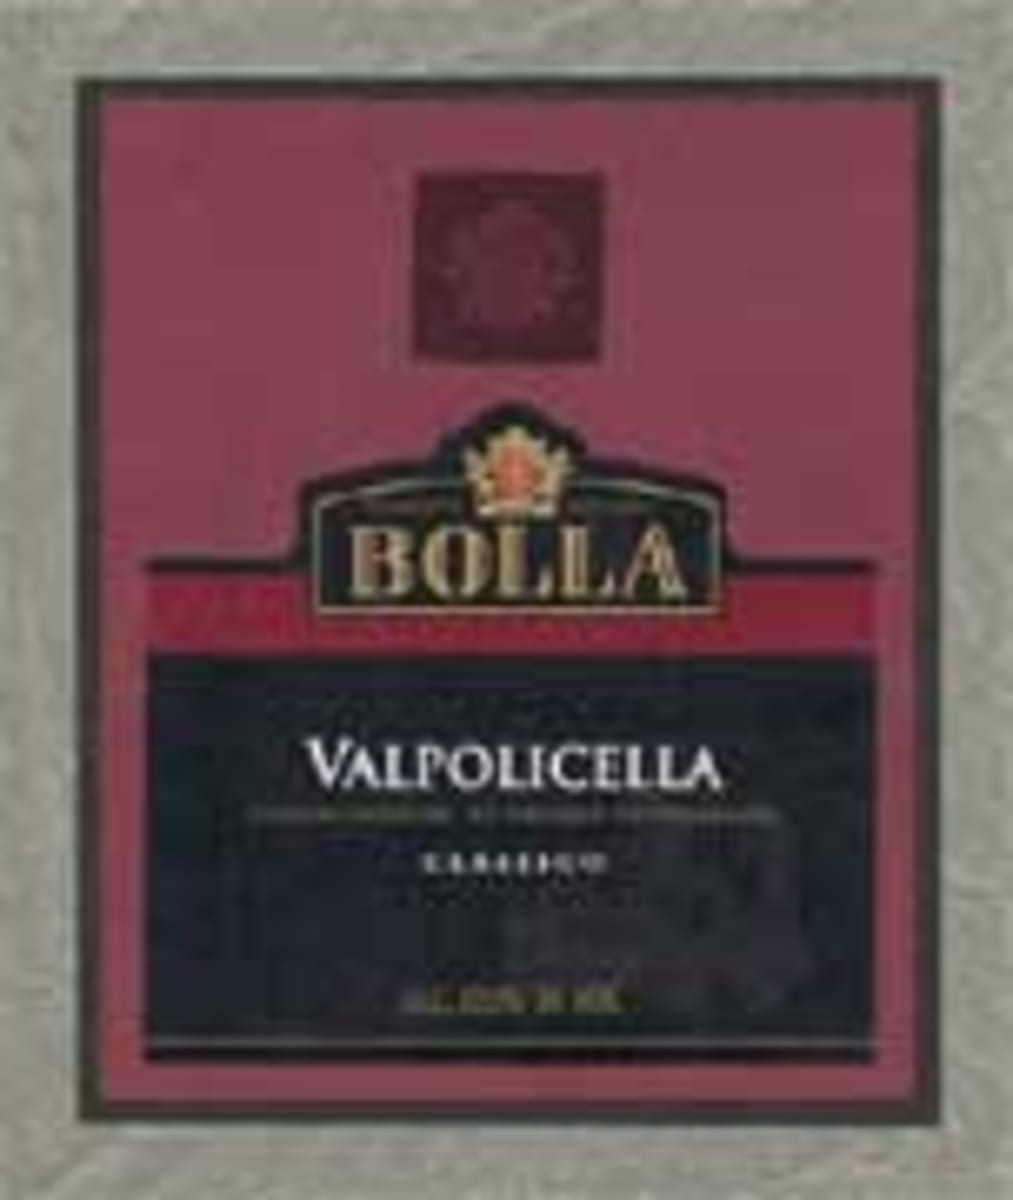 Bolla Valpolicella 2003 Front Label